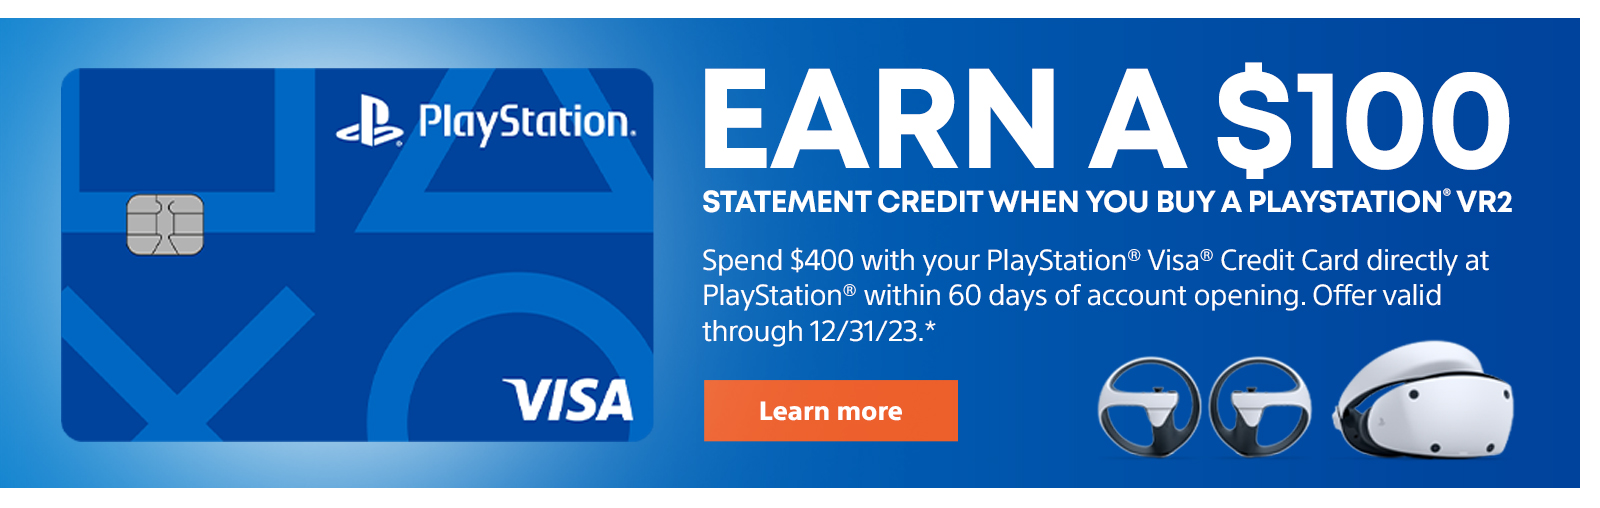 Спечелете кредит от извлечение от 100 долара, когато купите PlayStation VR2. Използвайте кредитната карта PlayStation Visa, за да харчите 400 долара директно в PlayStation в рамките на 60 дни от откриването на акаунта. Офертата е валидна до 31.12.23